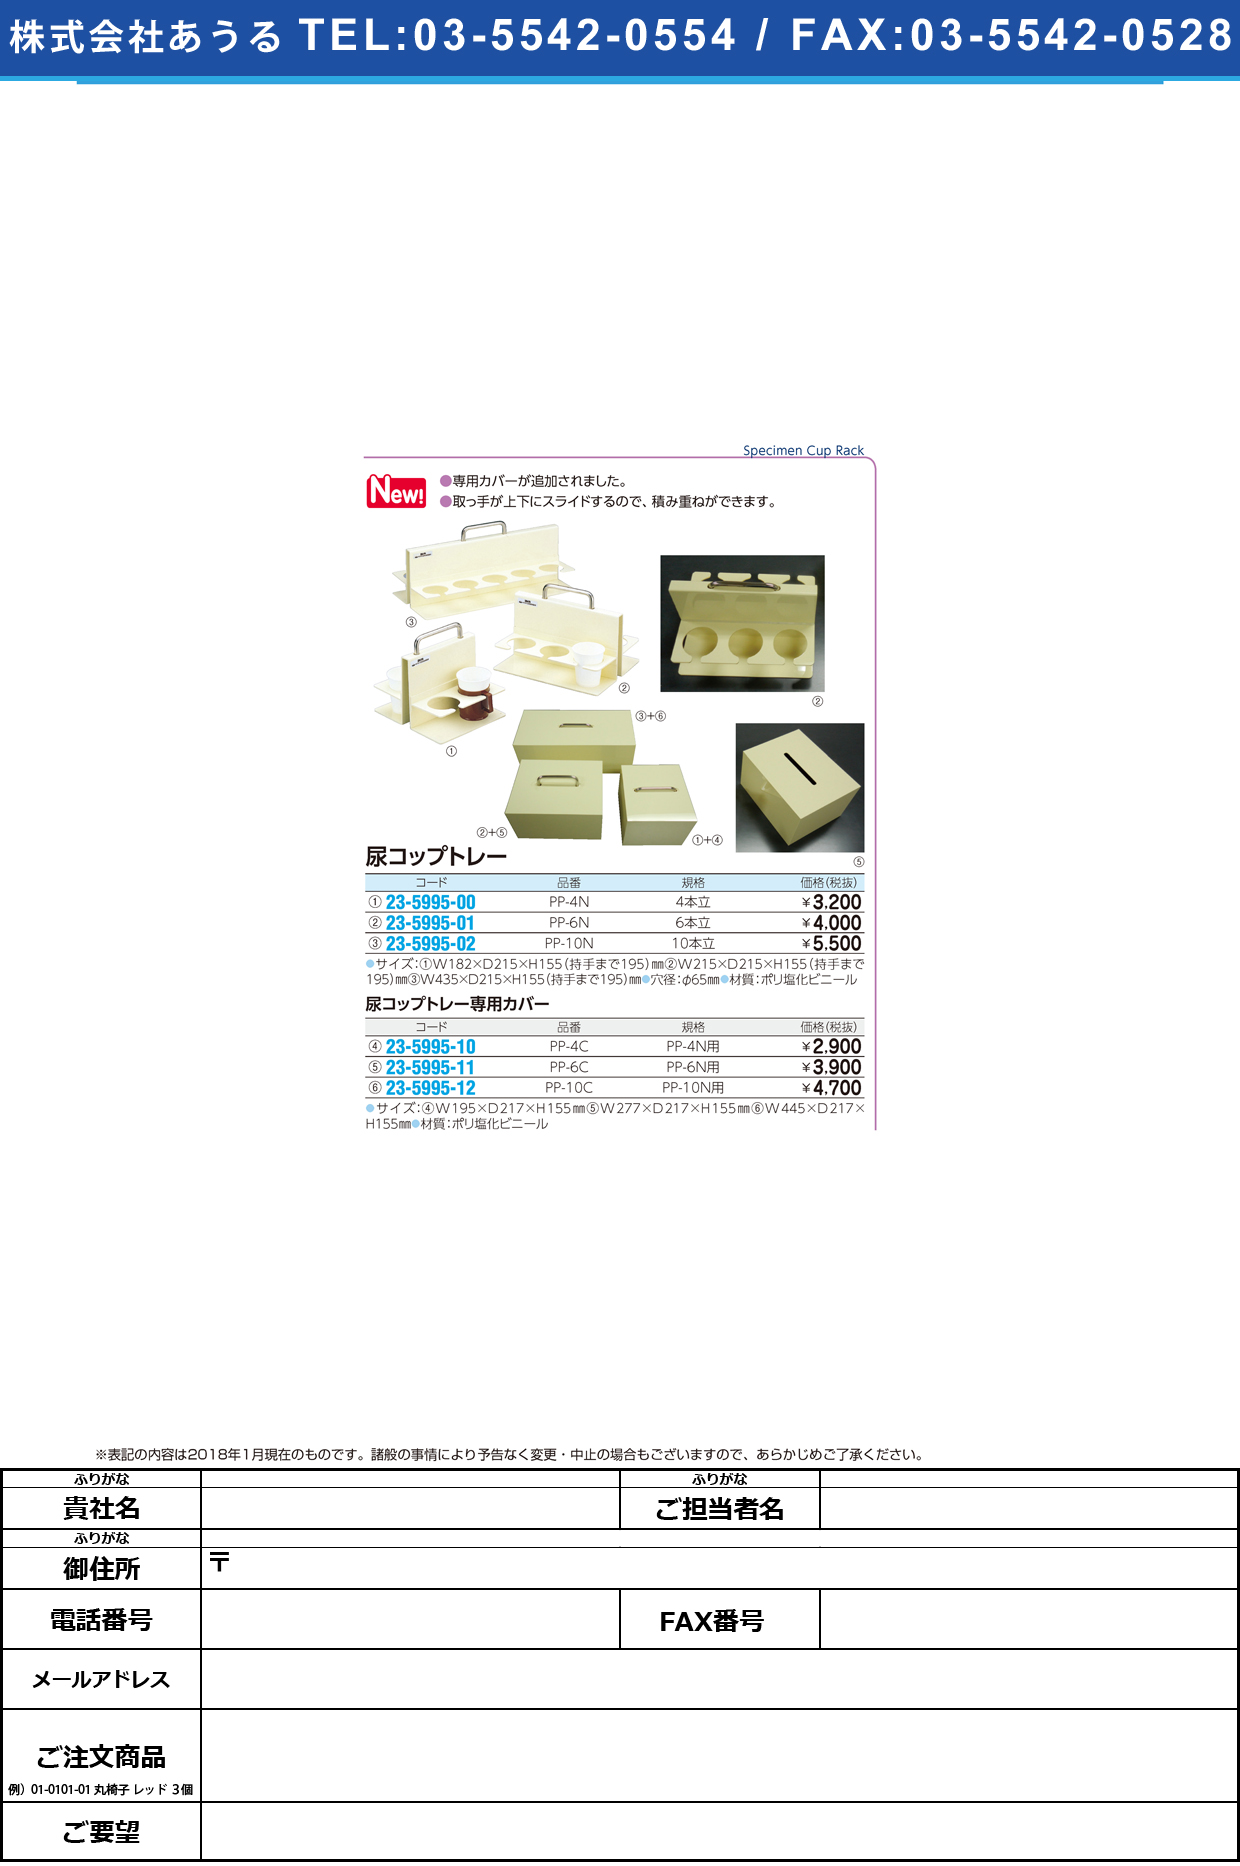 (23-5995-01)尿コップトレー（６人用） PP-6N ﾆｮｳｺｯﾌﾟﾄﾚｰ(6ﾆﾝﾖｳ)【1個単位】【2019年カタログ商品】